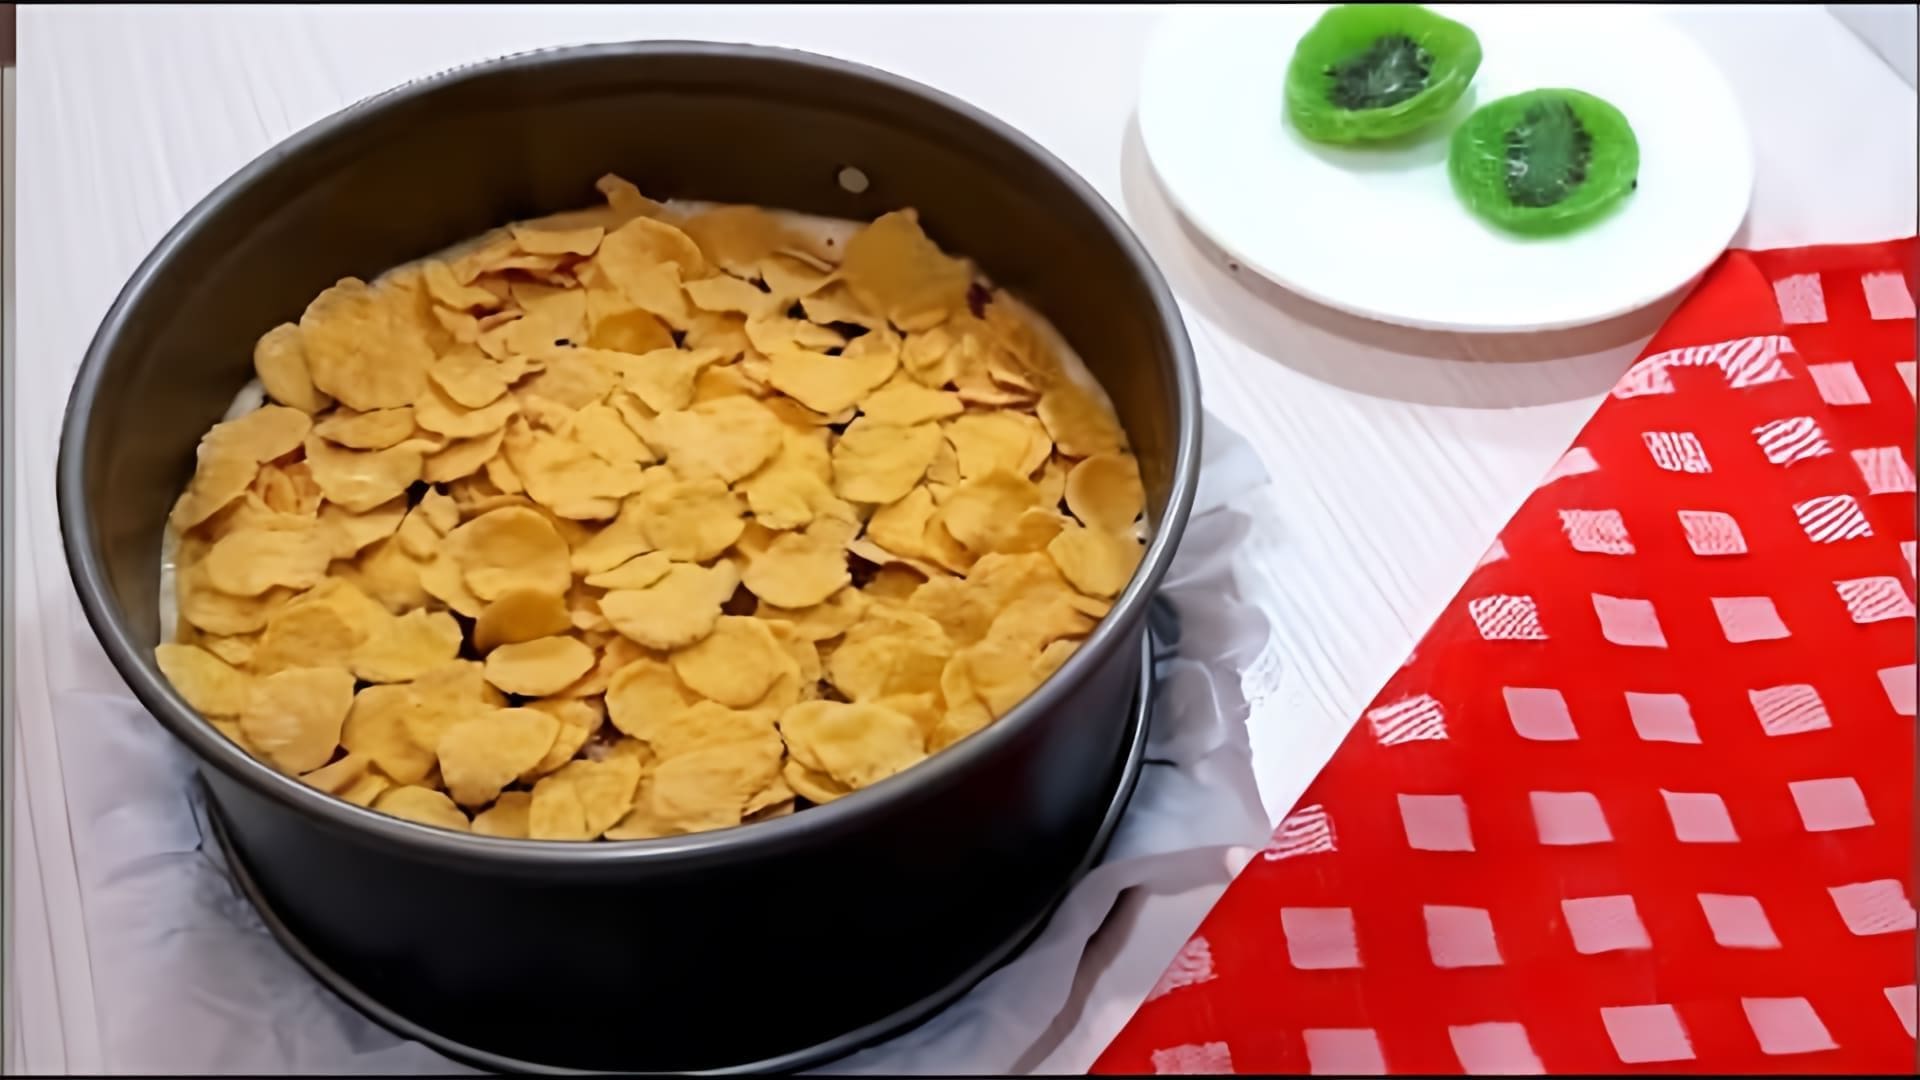 В этом видео демонстрируется рецепт приготовления бисквитного пирога с кукурузными хлопьями и сухофруктами